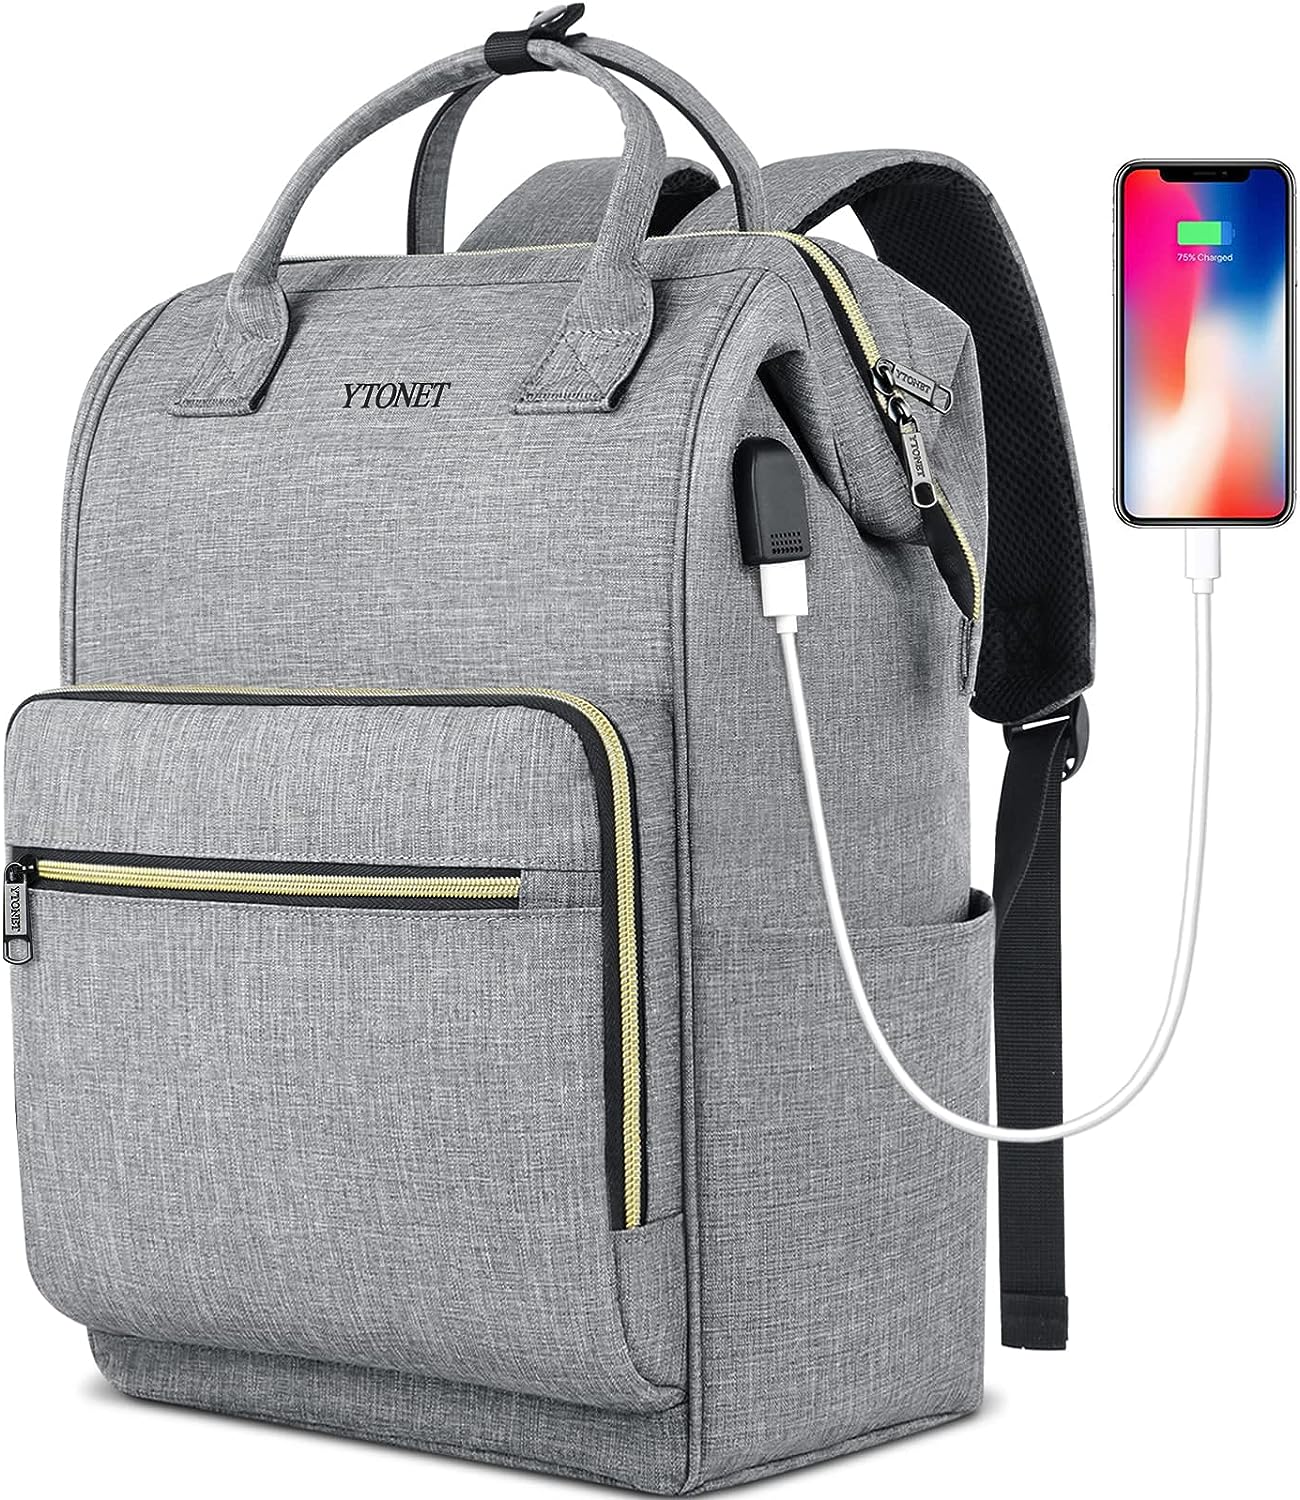 Ytonet Laptop Backpack for Women, Travel Backpack for [...]